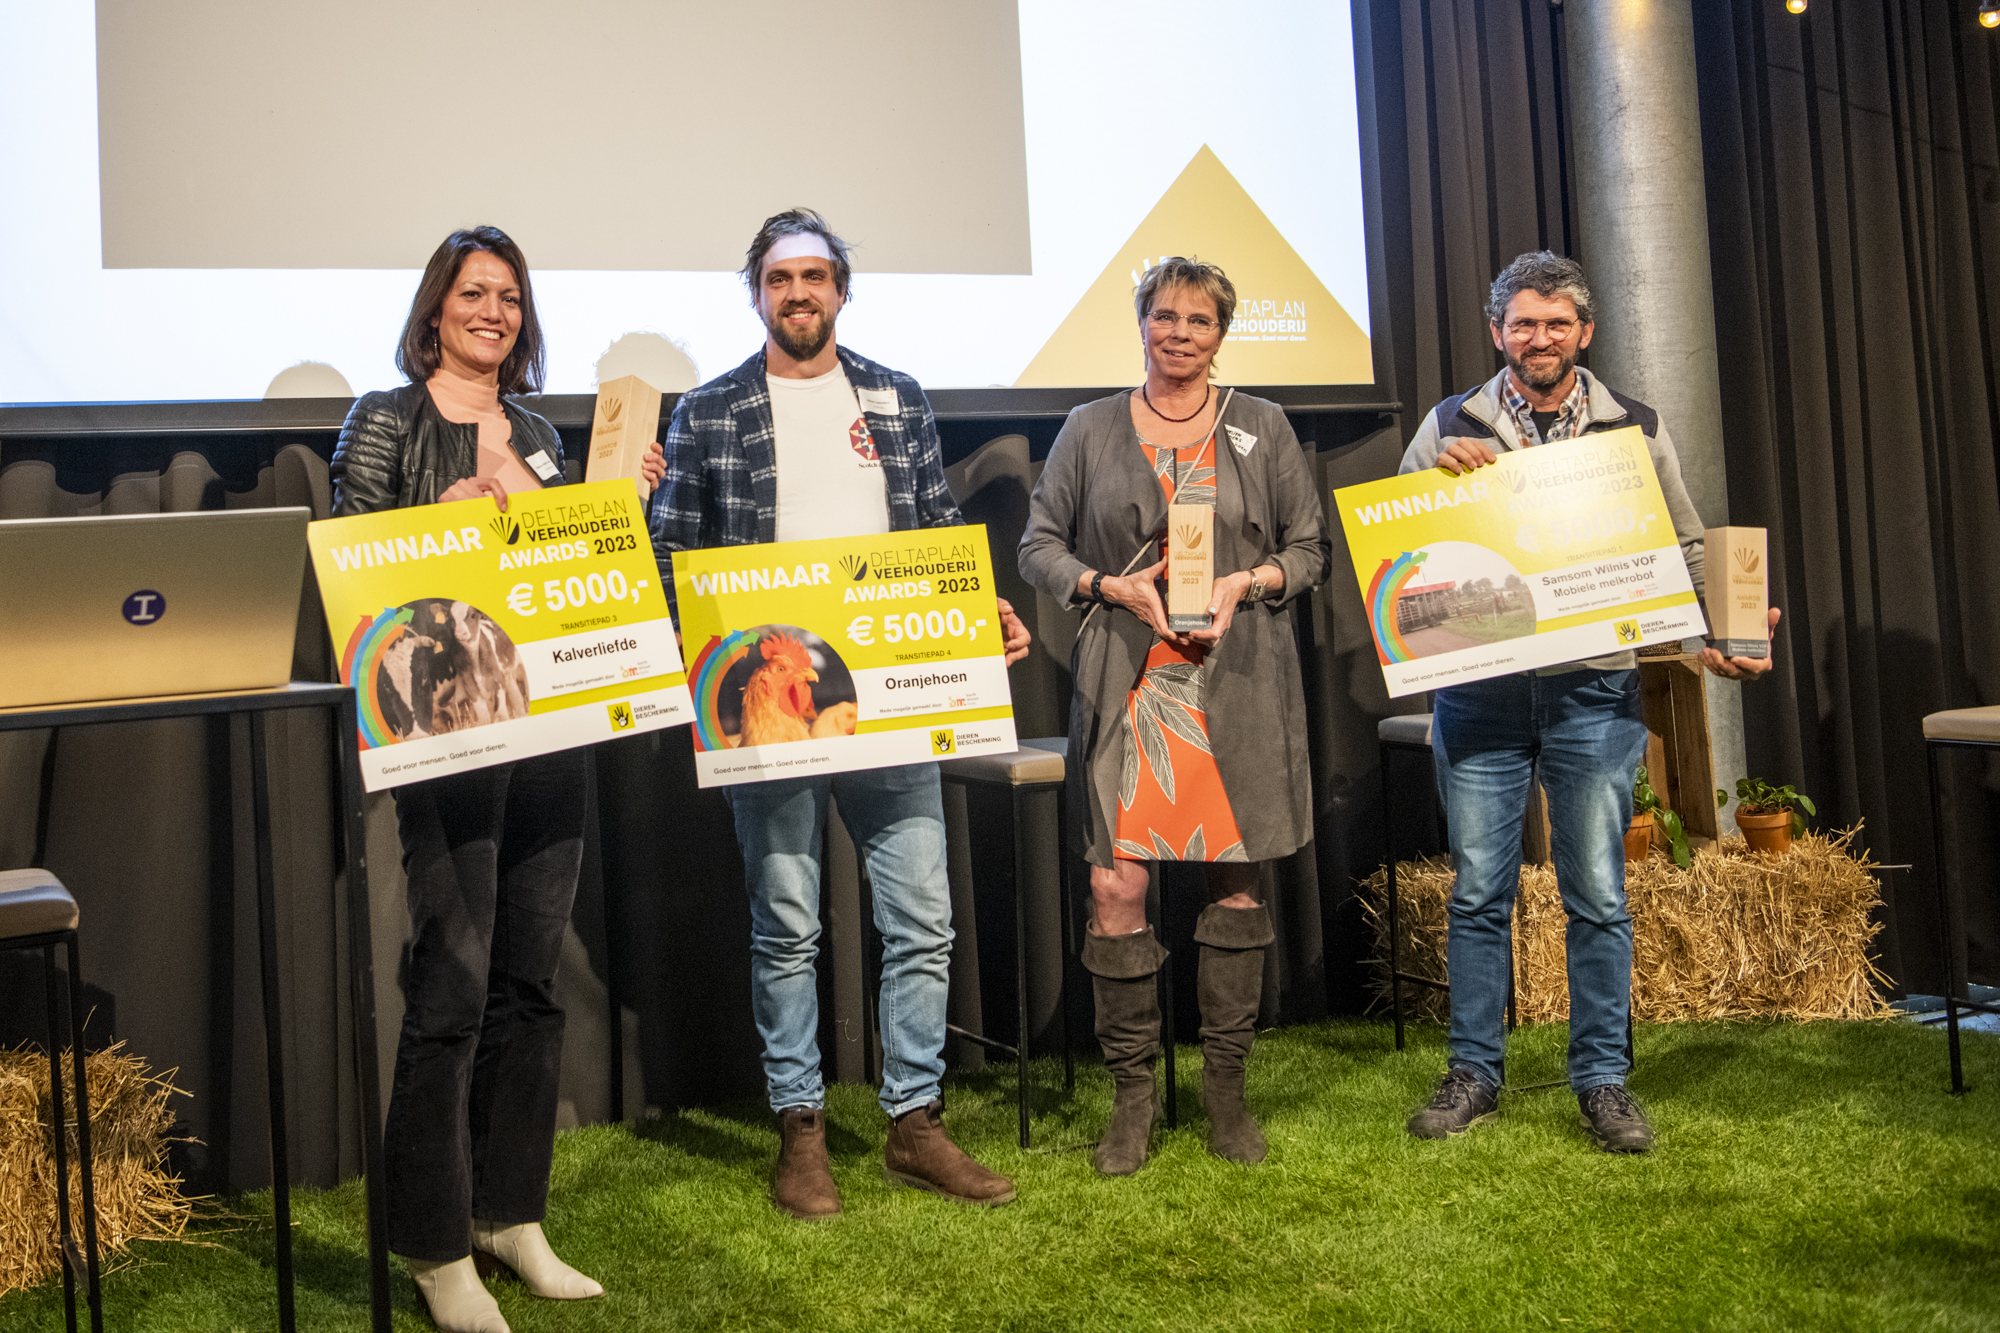 Winnaars Deltaplan Veehouderij Awards 2023: Kalverliefde, Oranjehoen, Samsom Wilnis VOF.